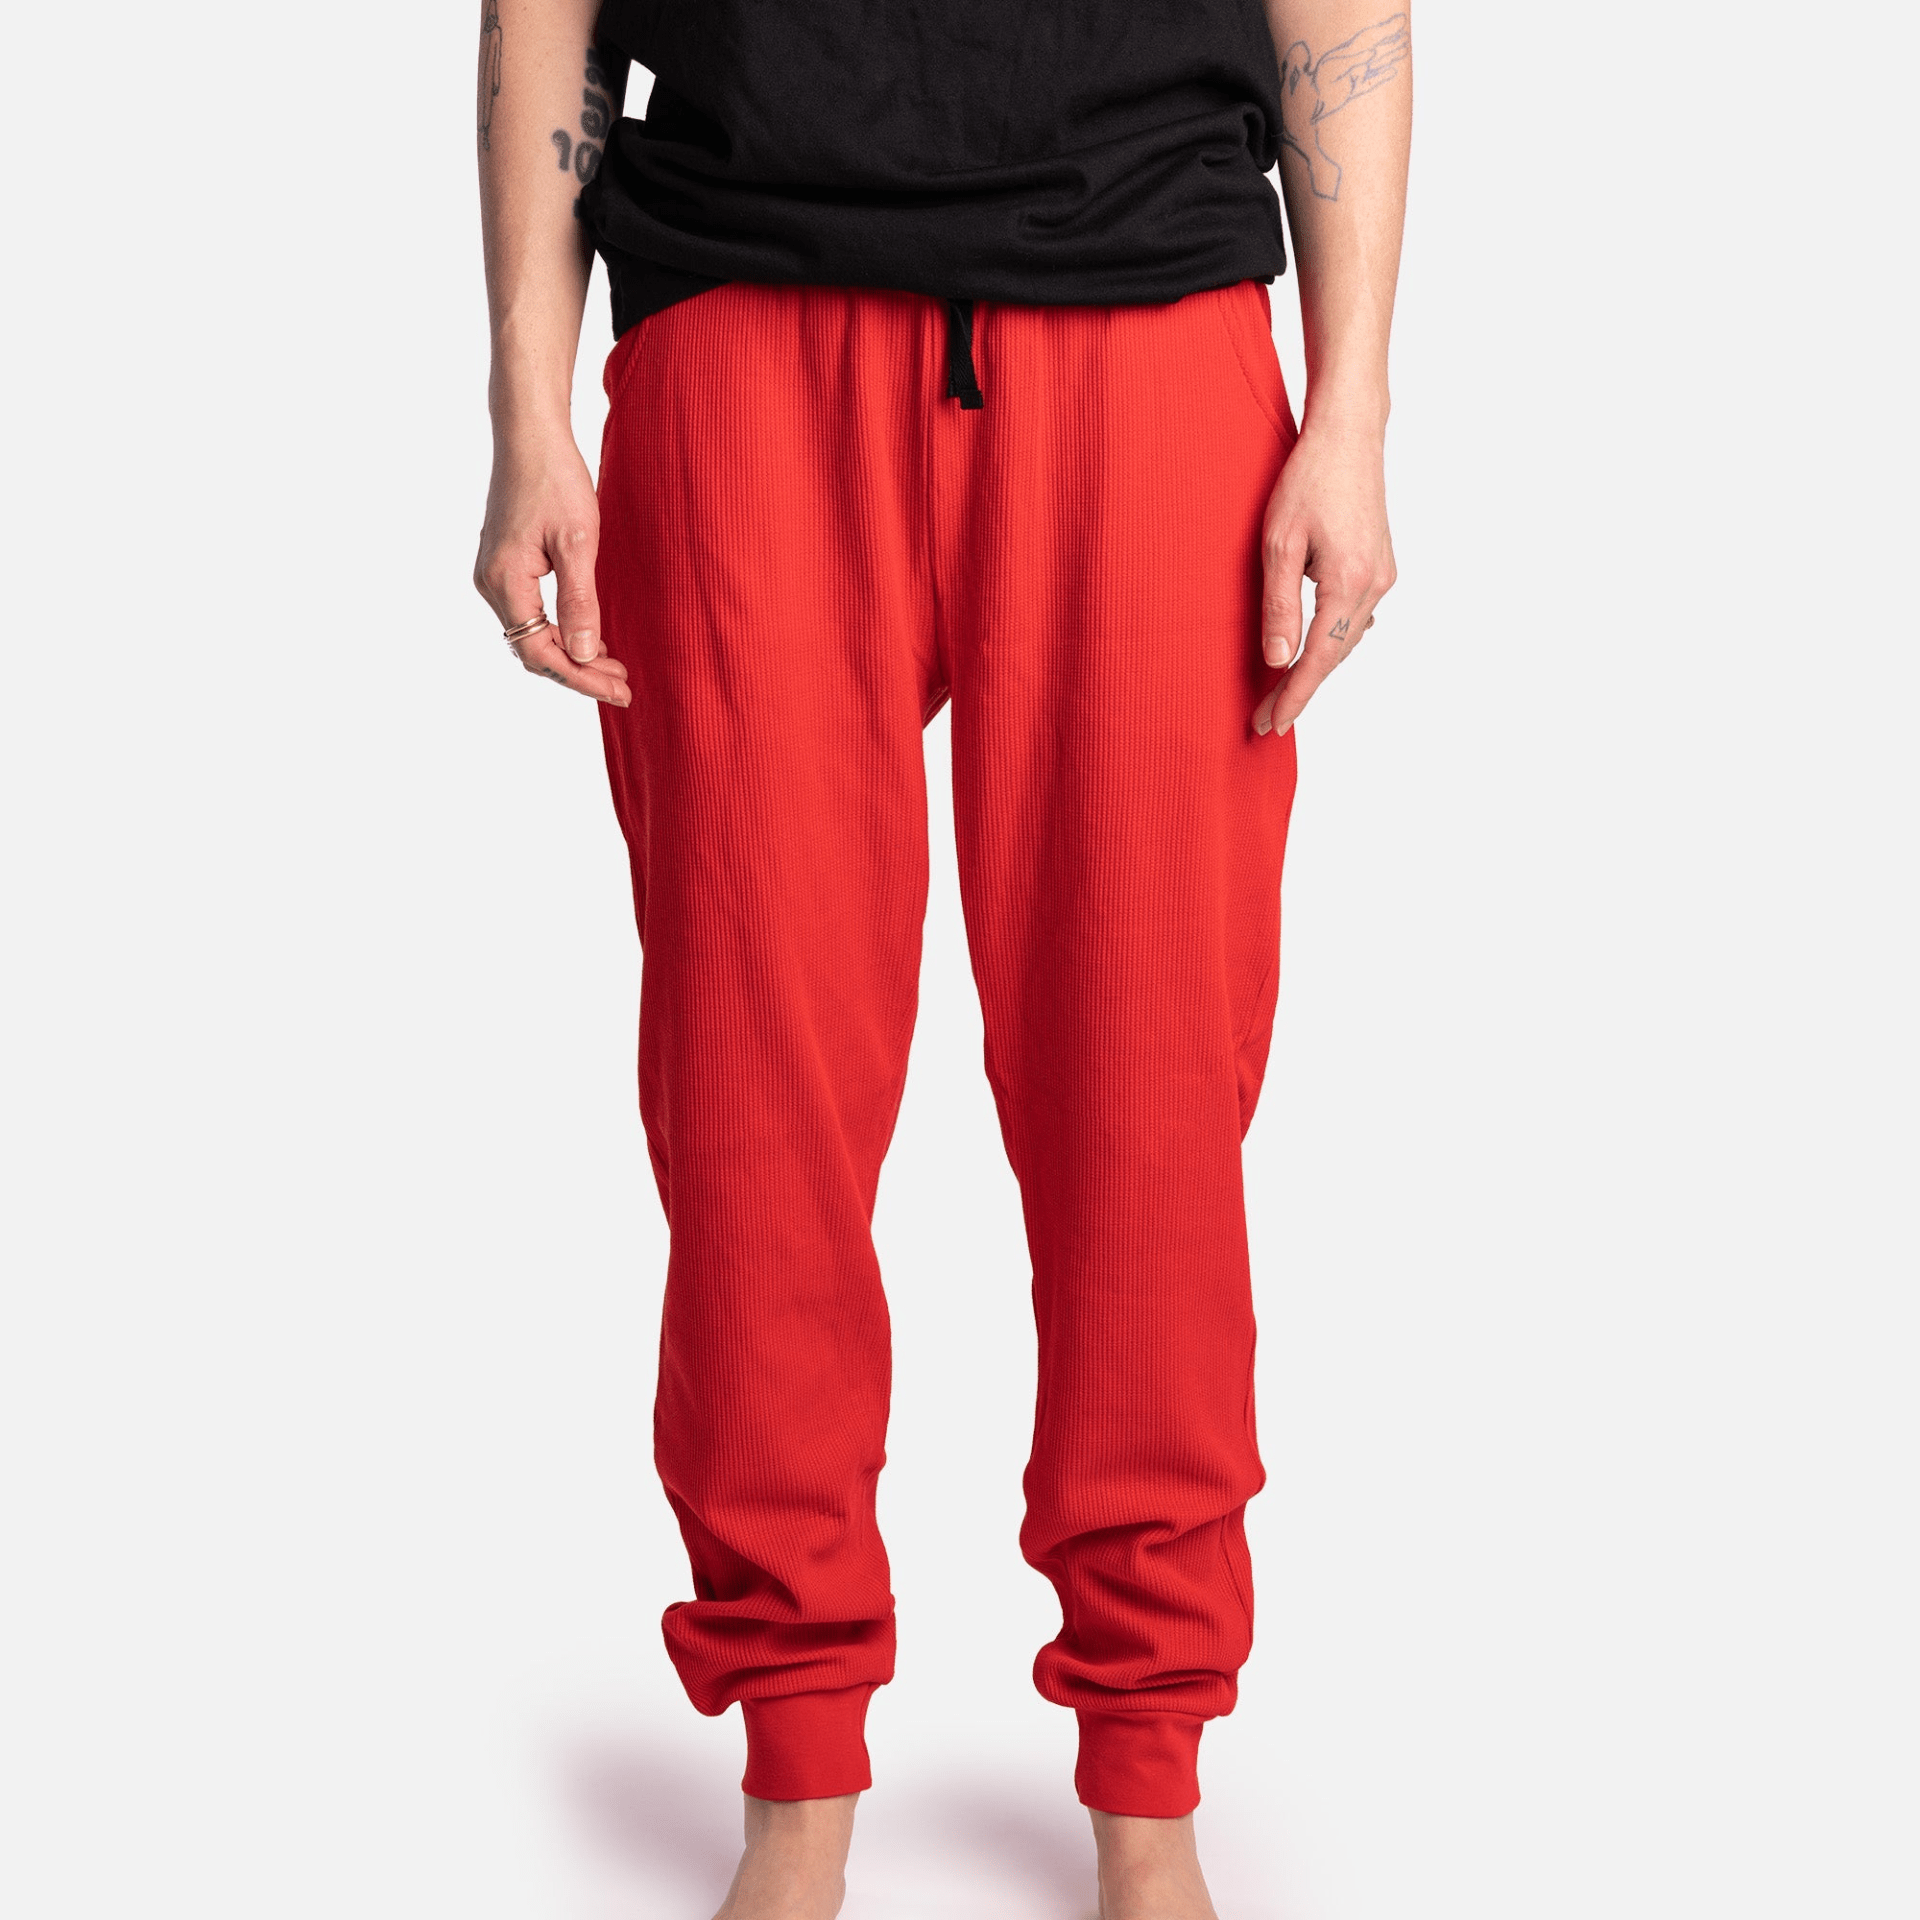 Matching Human Pajama - Buffalo Plaid Red